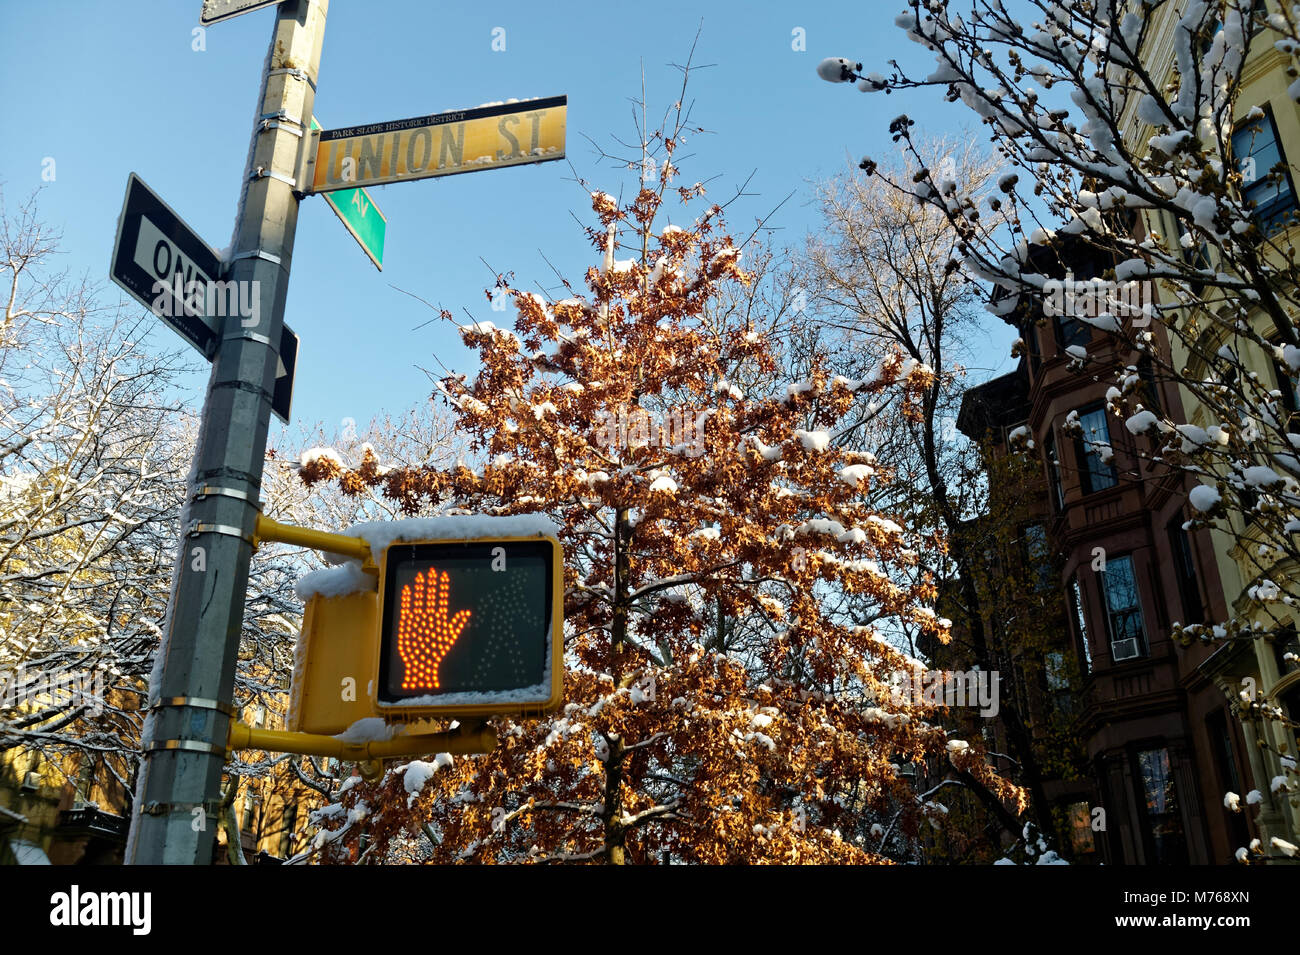 Croisement et panneau de rue sur Union Street, Park Slope Brooklyn. Banque D'Images